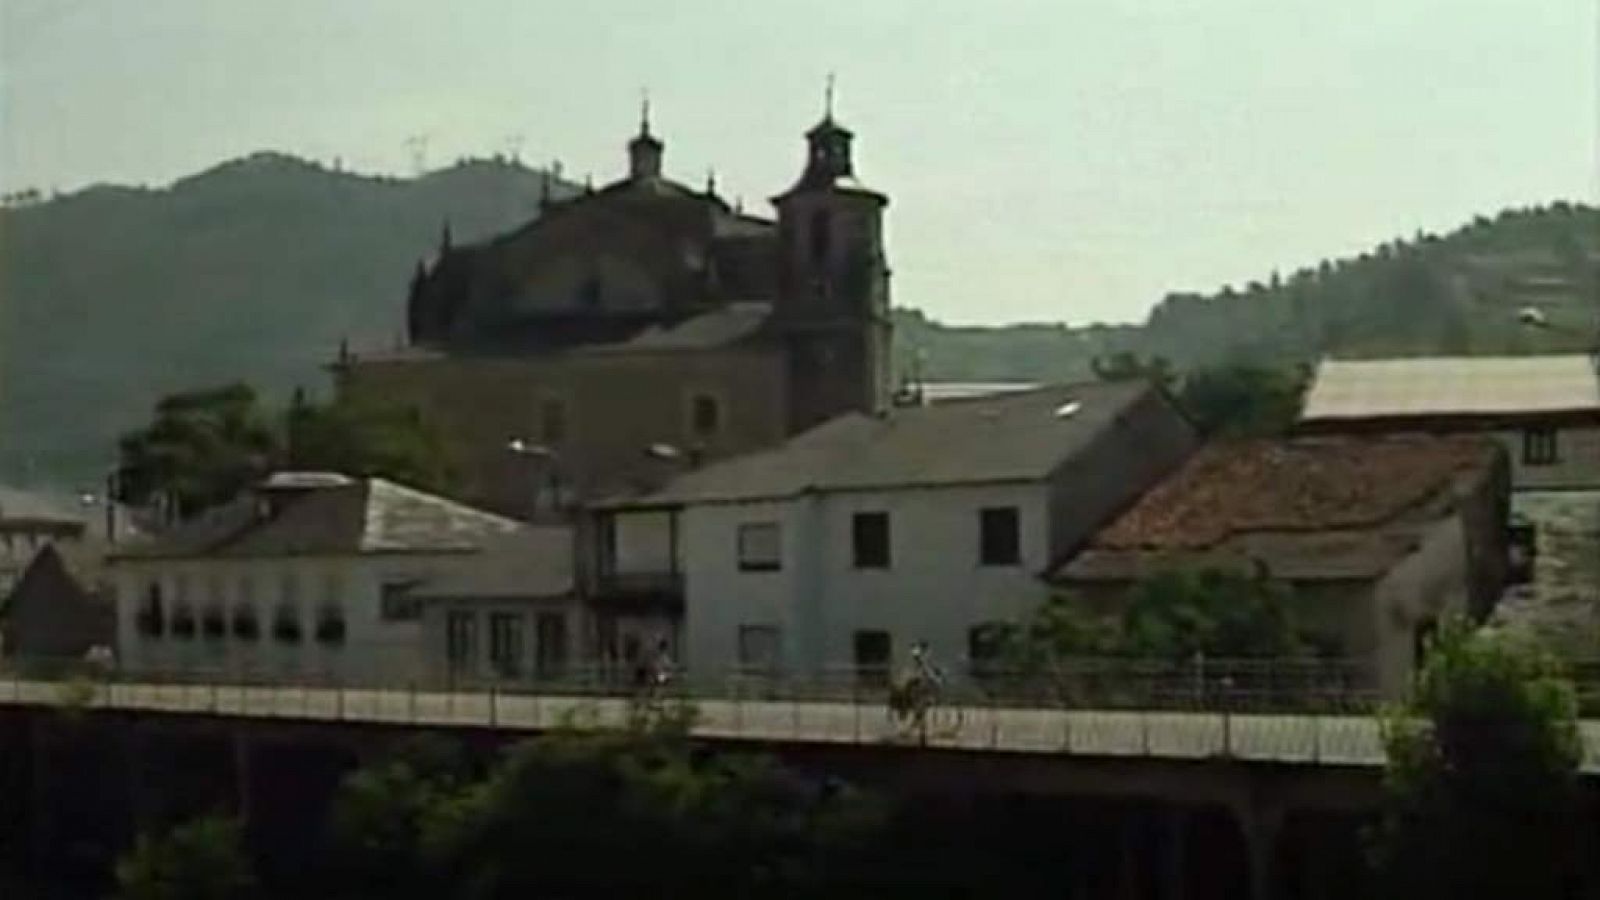 Los pueblos - Villafranca del Bierzo